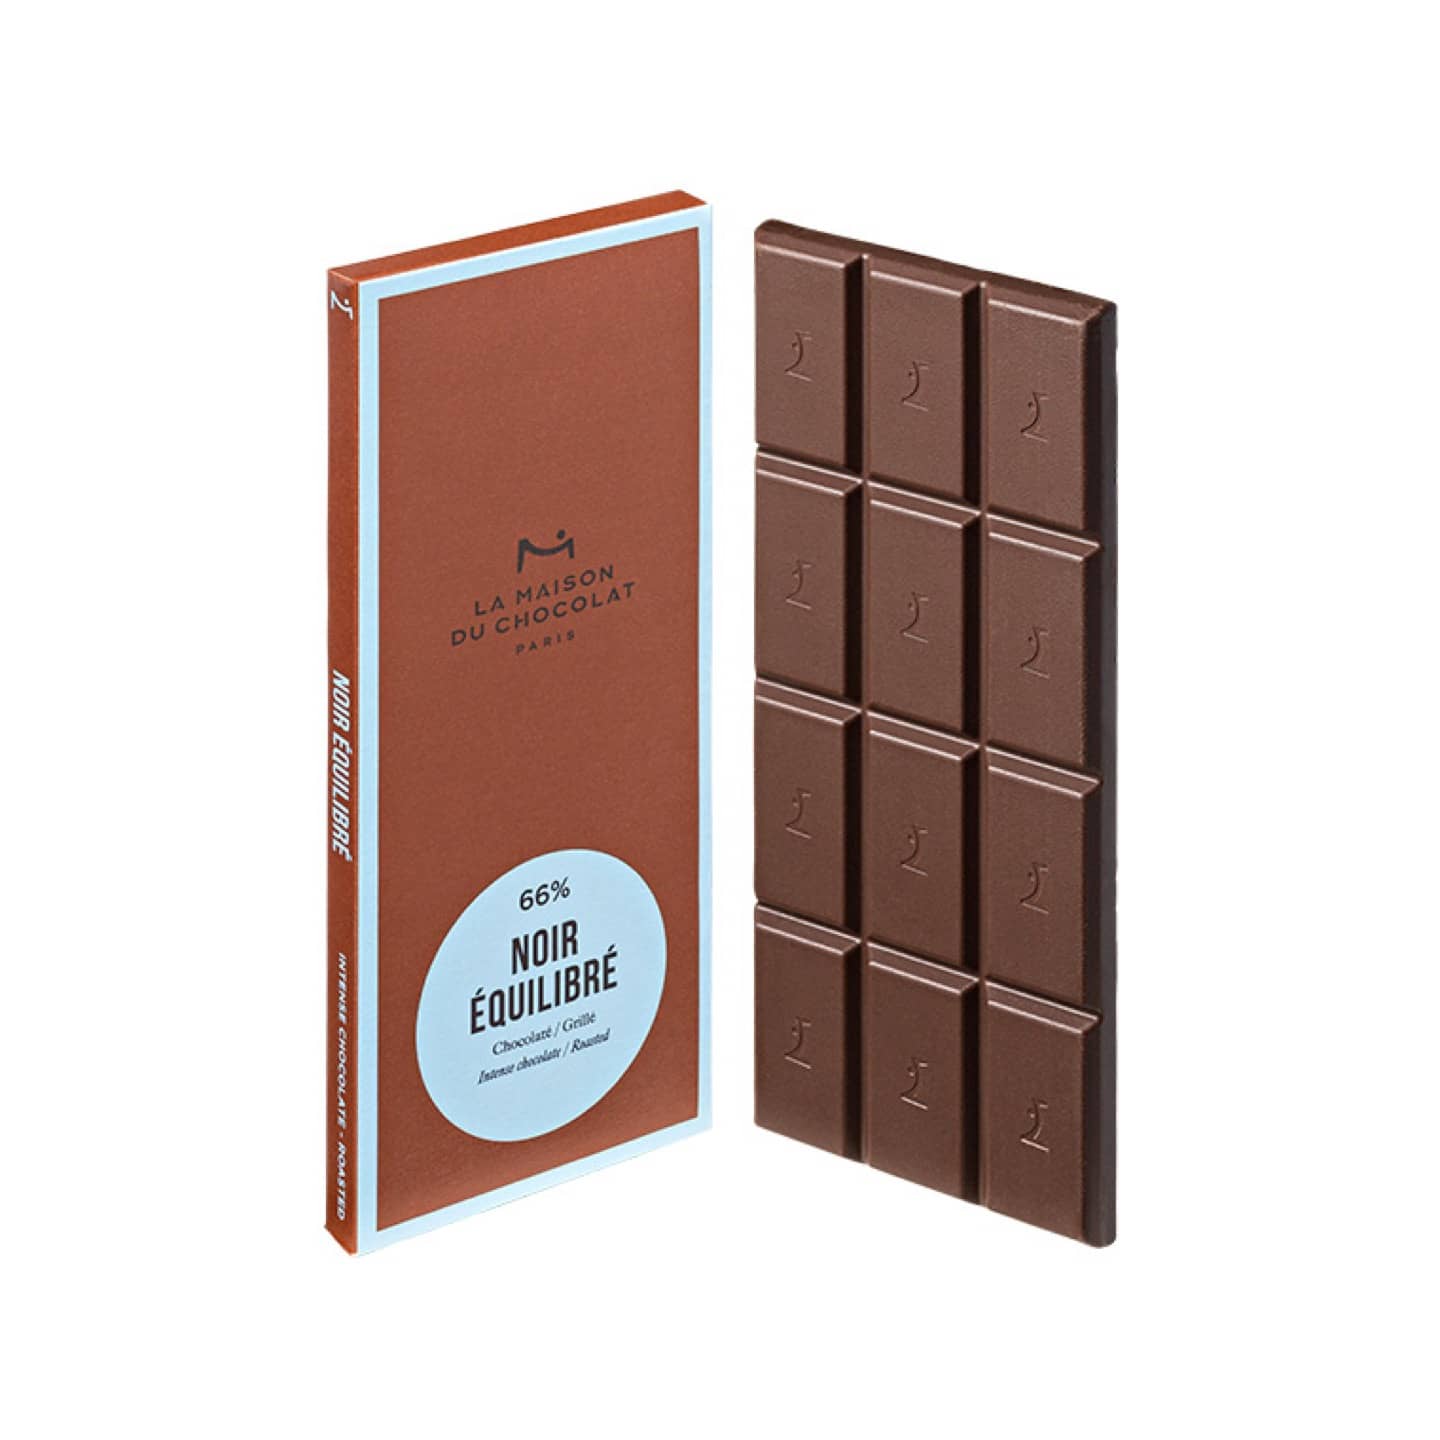 La Maison du Chocolat • Tablette Chocolat Noir 66% 75g Noir Equilibré